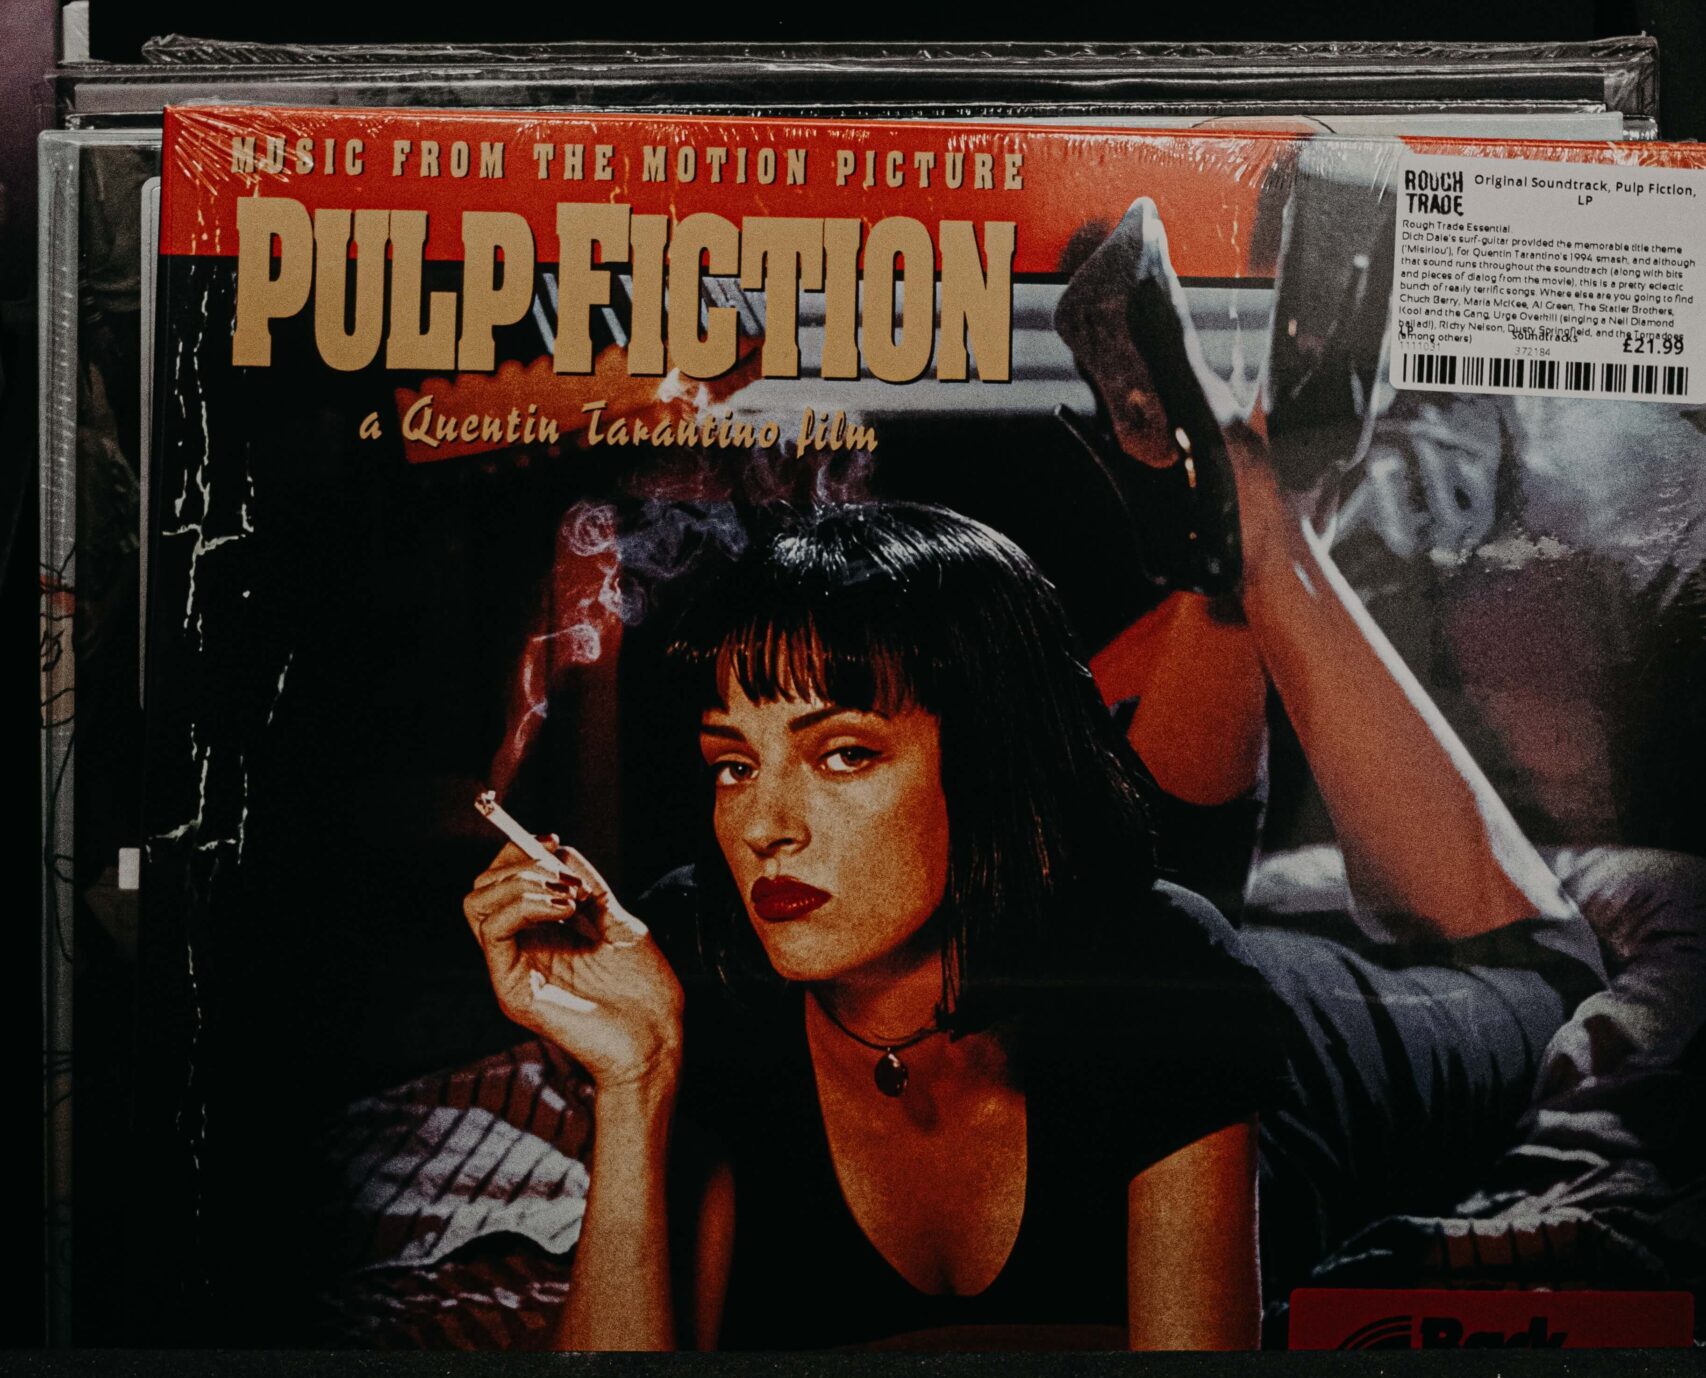 Schallplatte zur Filmmusik aus dem Autorenfilm Pulp Fiction